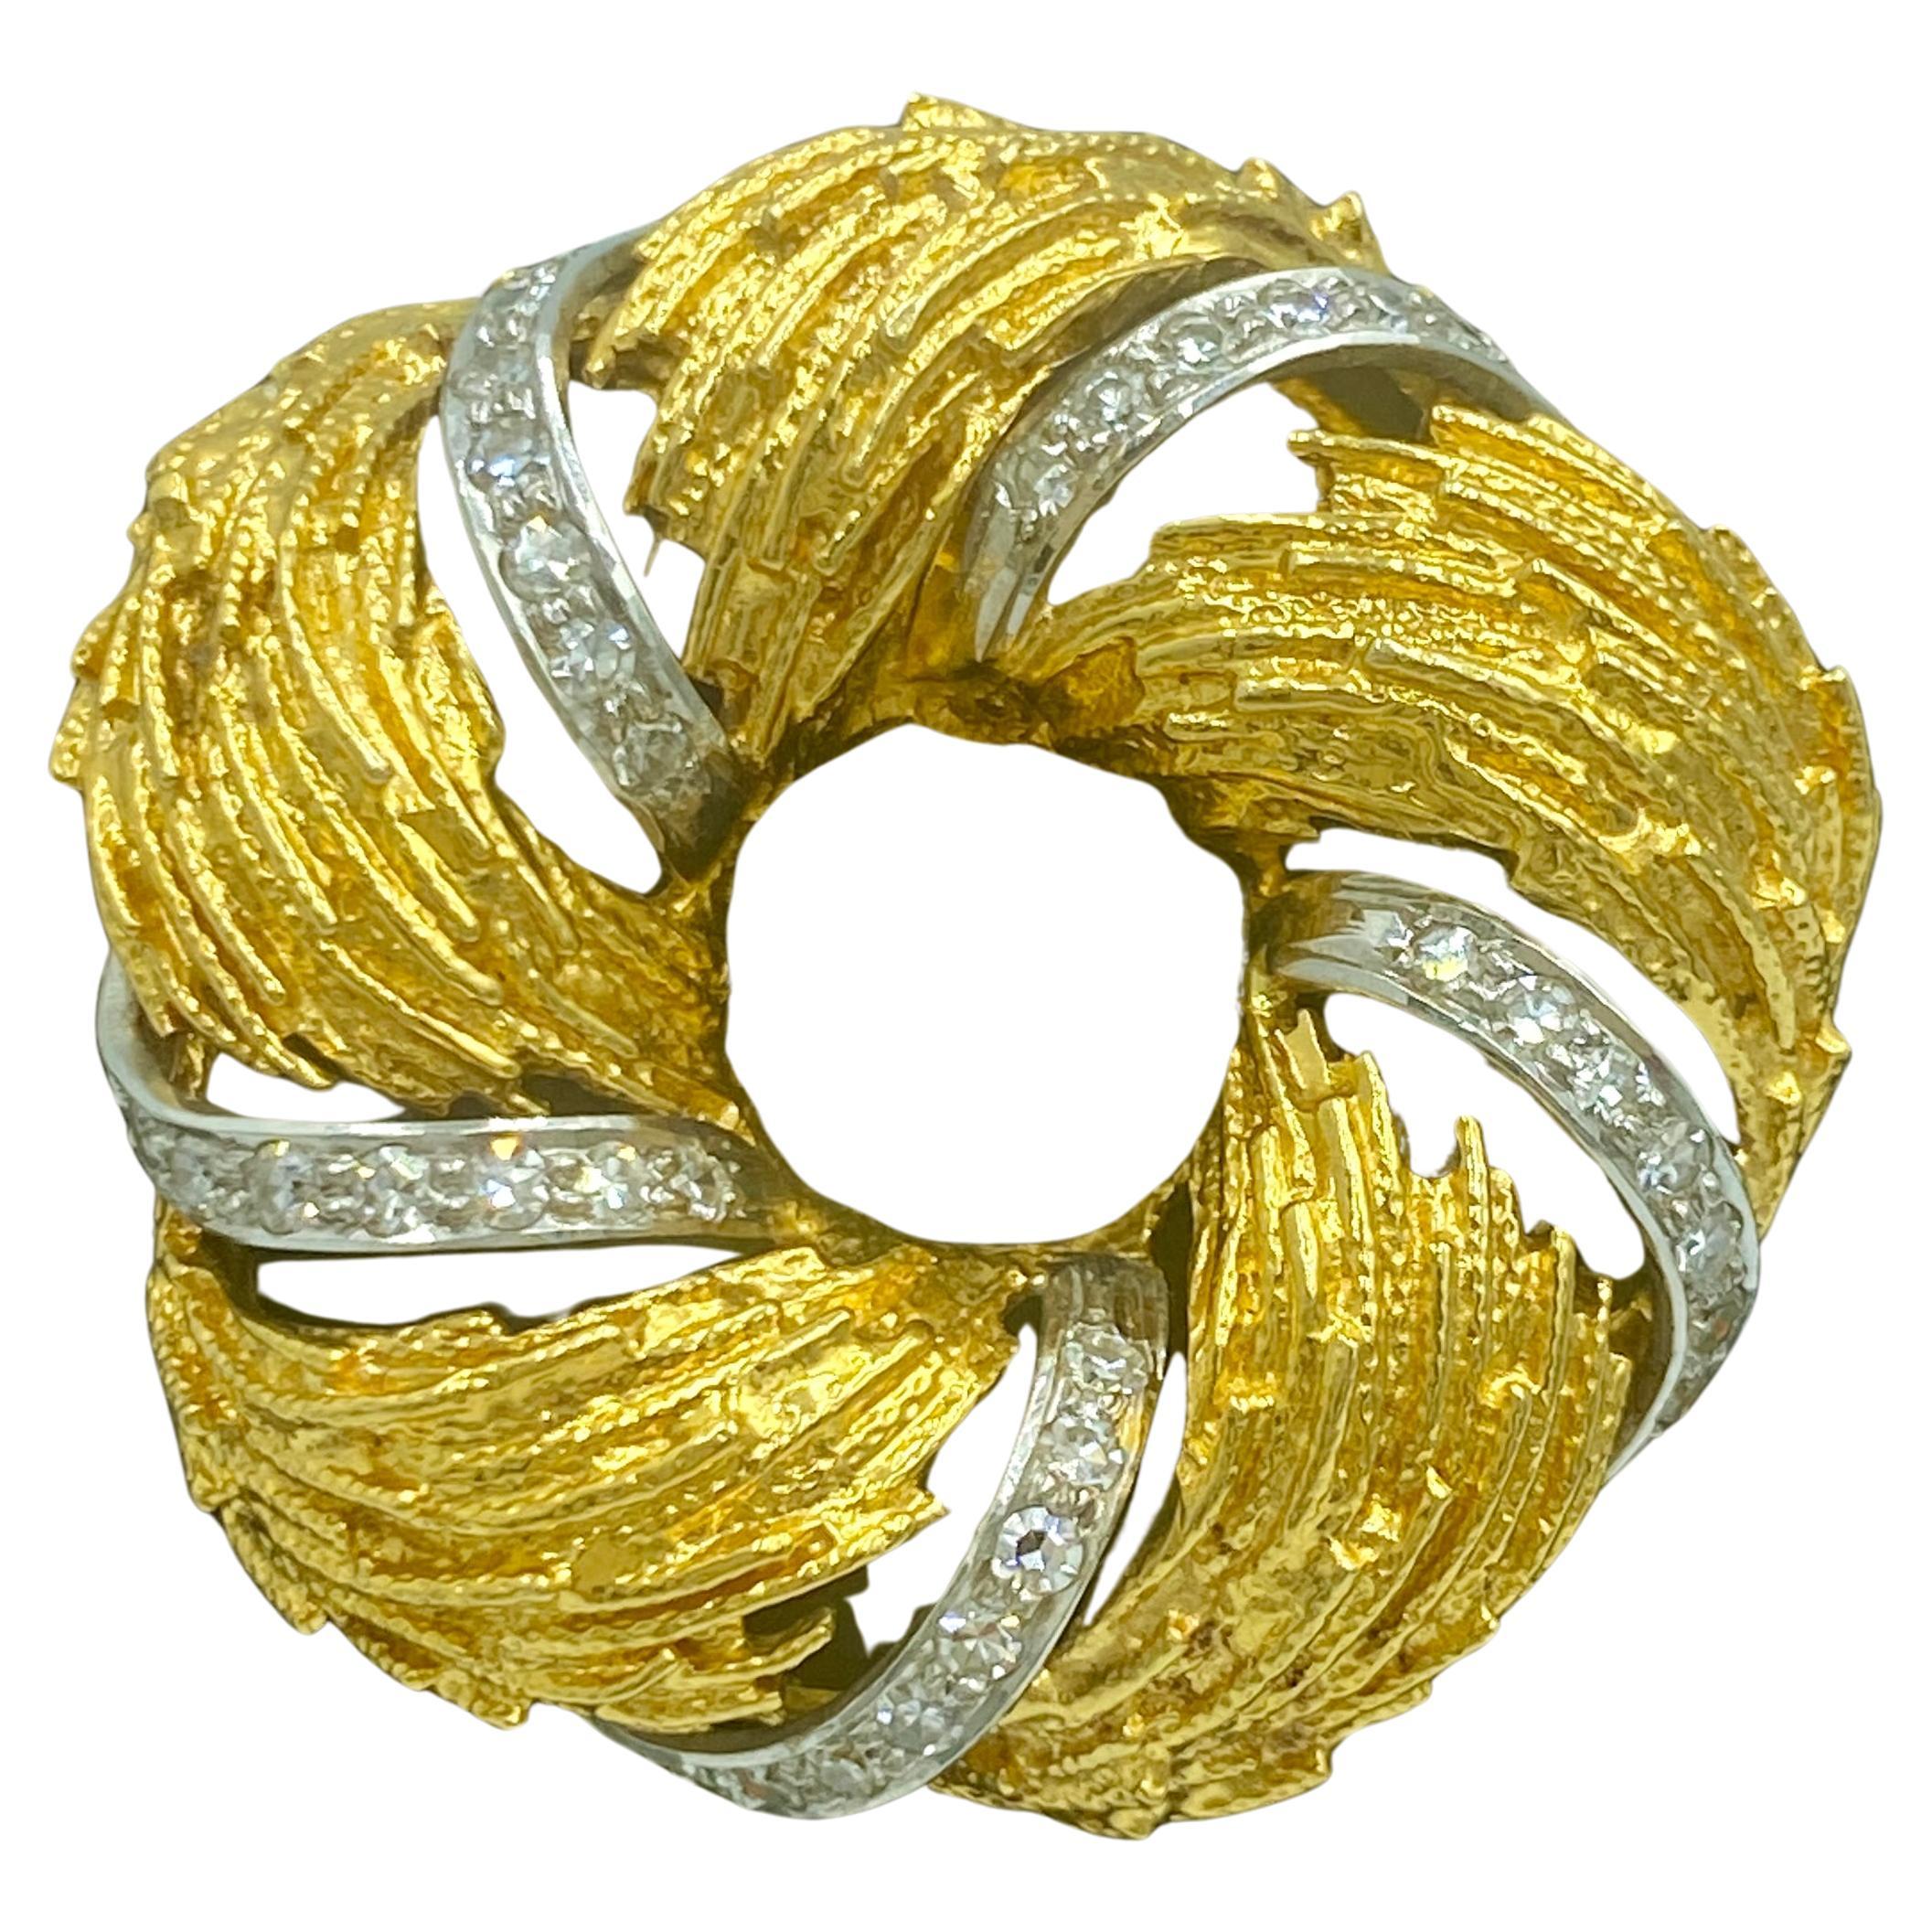 1960er Jahre Europäische Kranzbrosche aus 18k Gold und Diamanten